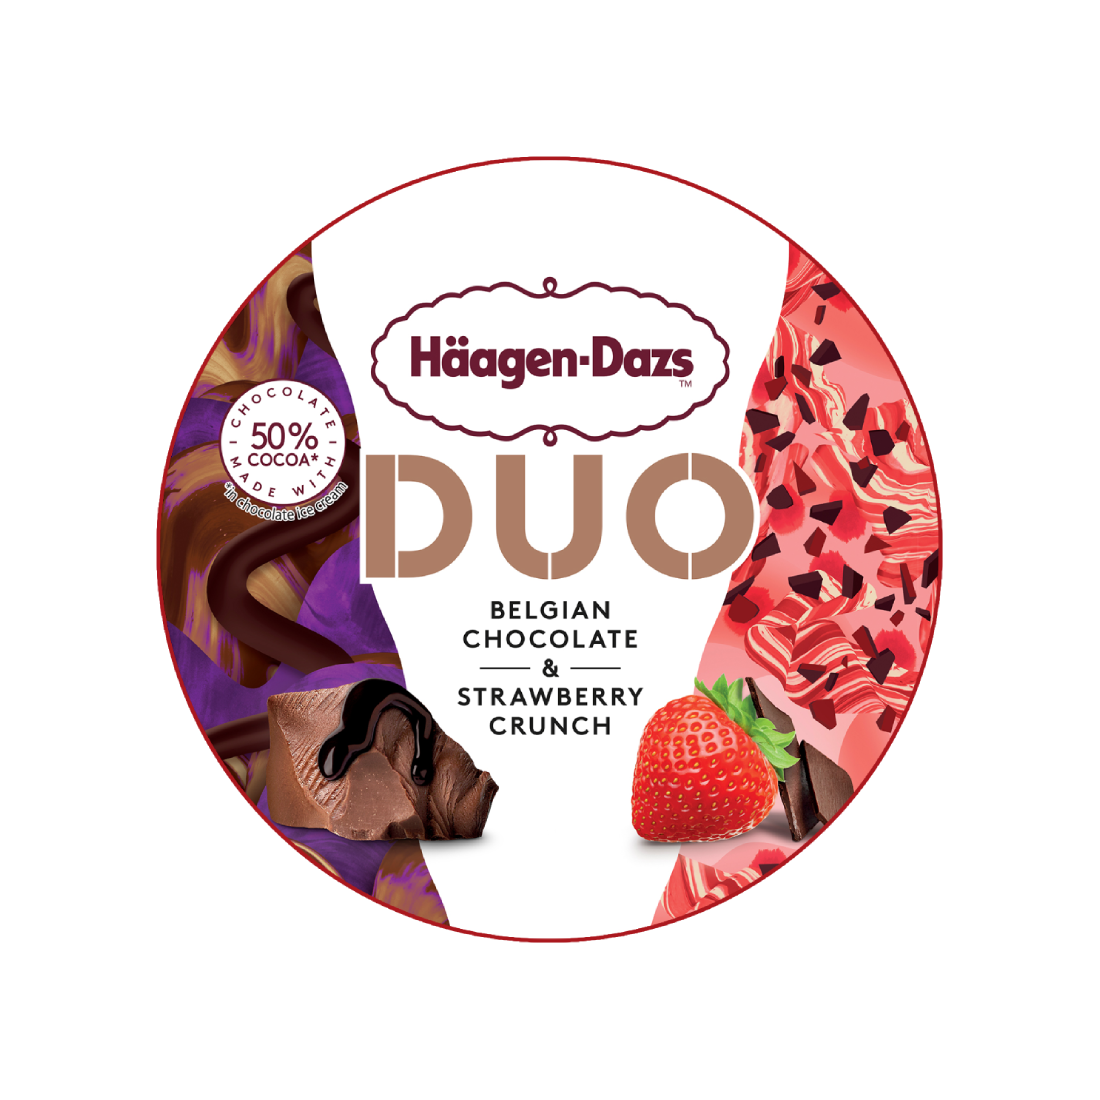 duo belgian chocolate strawberry